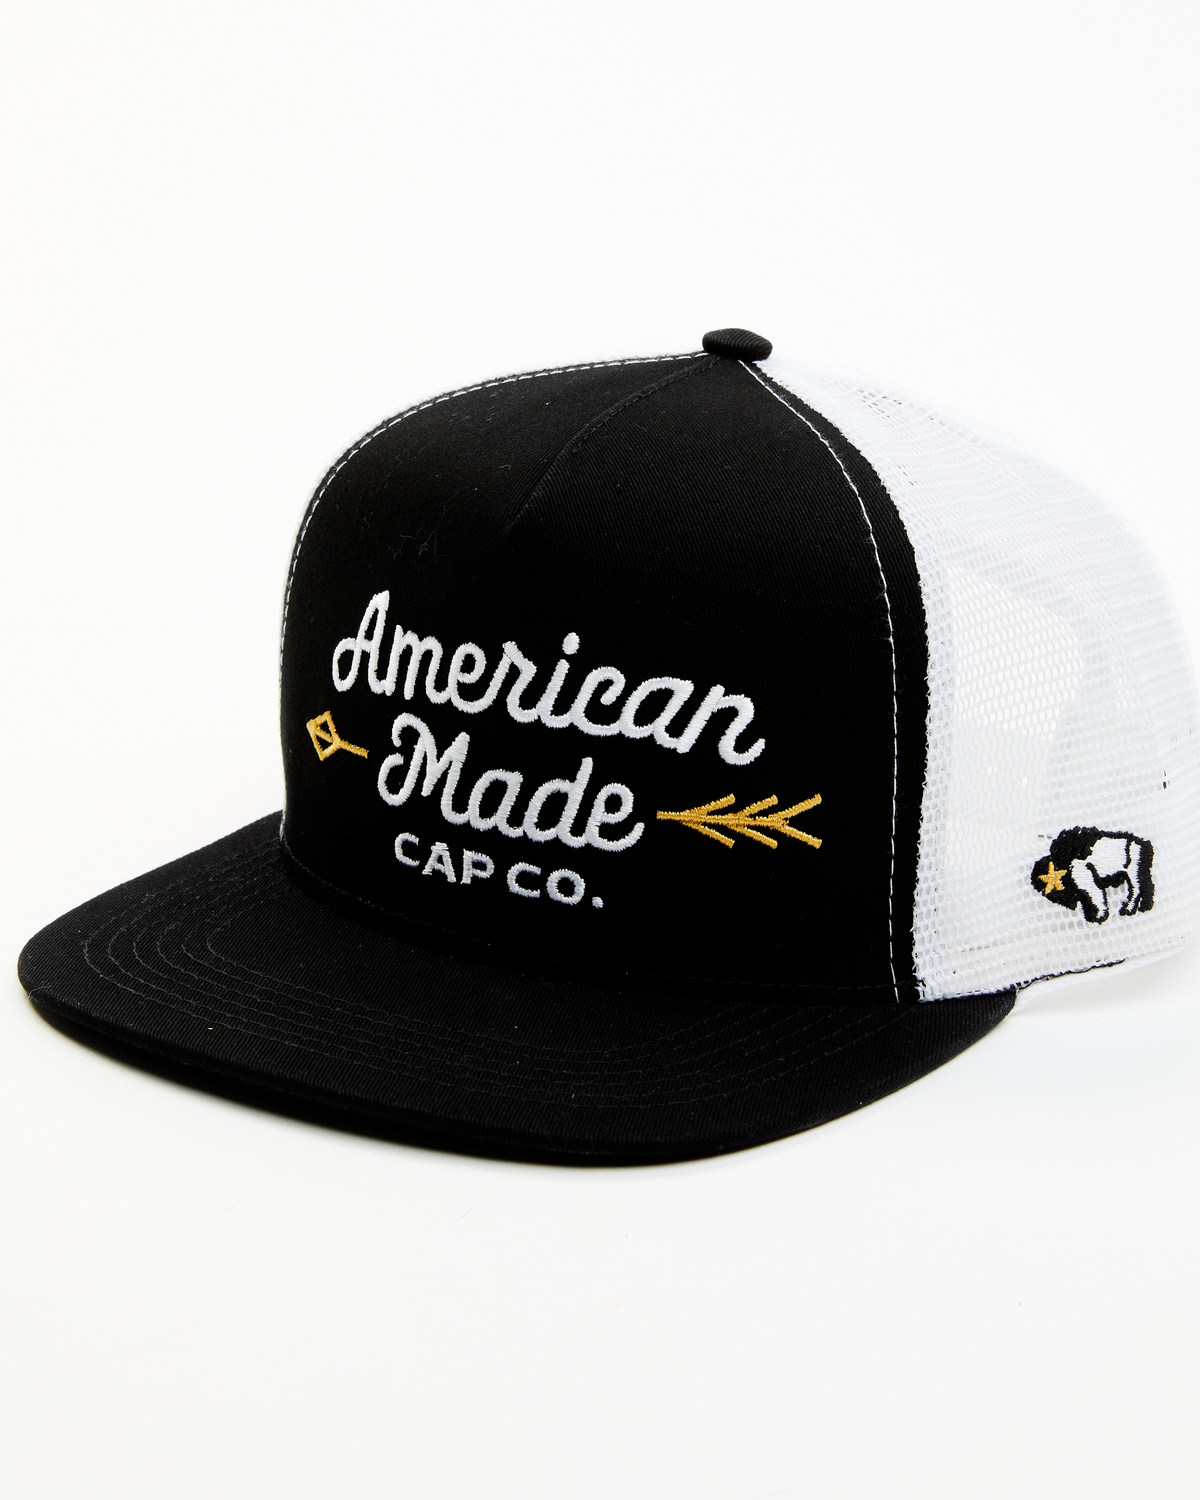 Hooey Men's American Made Cap Co. Trucker Cap